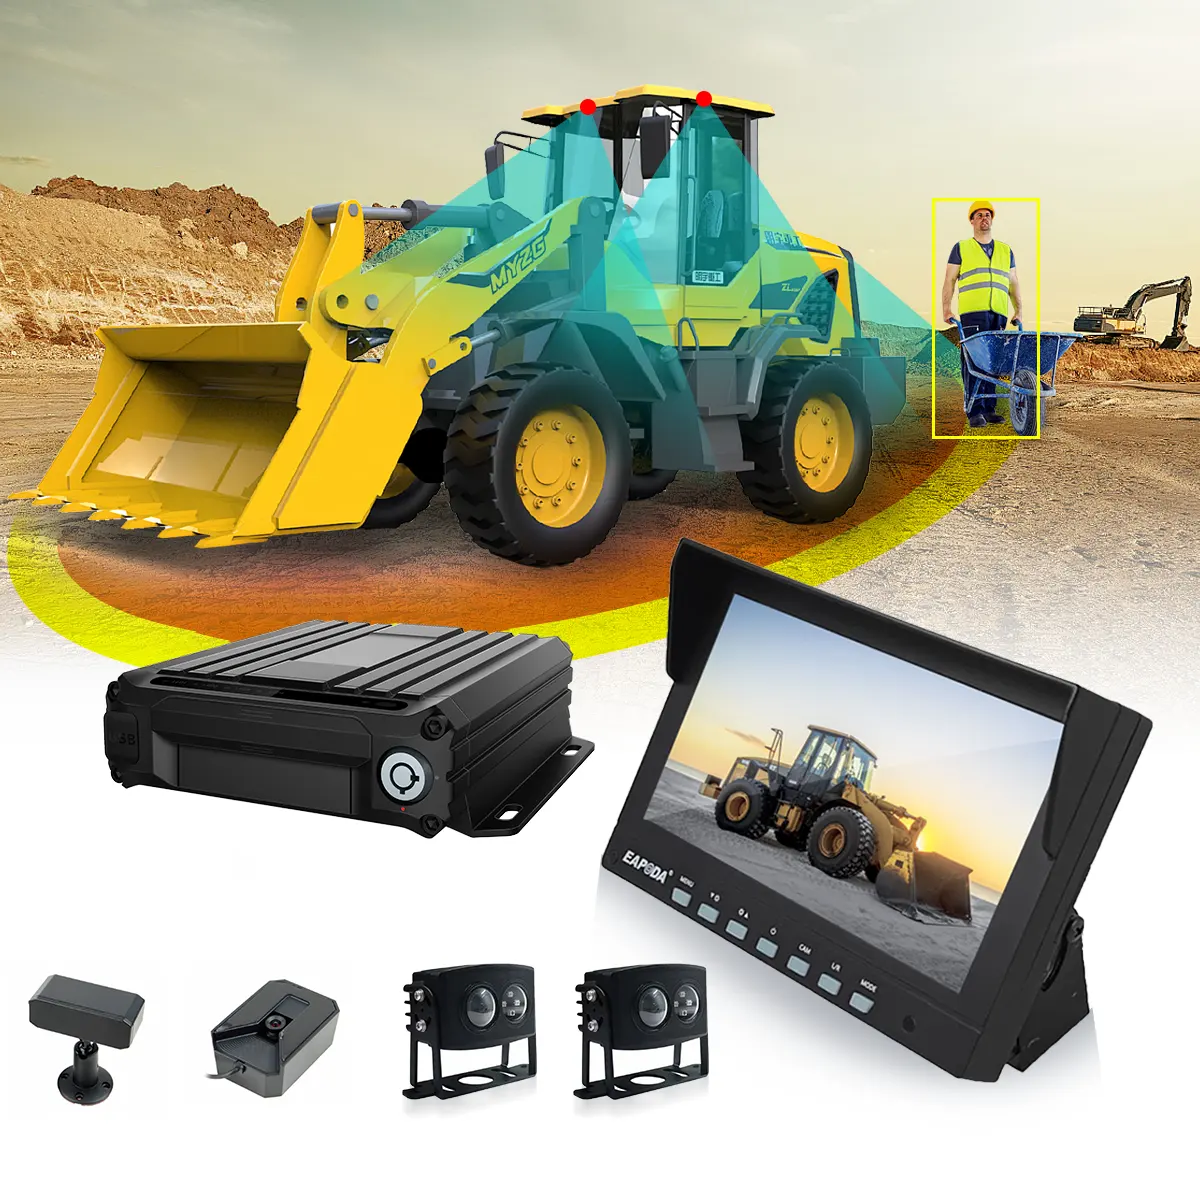 4CH 1080P Мини-видеорегистратор с GPS SD-картой поддержка мобильного доступа-IPS ЖК-экран мобильный видеорегистратор для автомобилей, автобусов, грузовиков, транспортных средств"